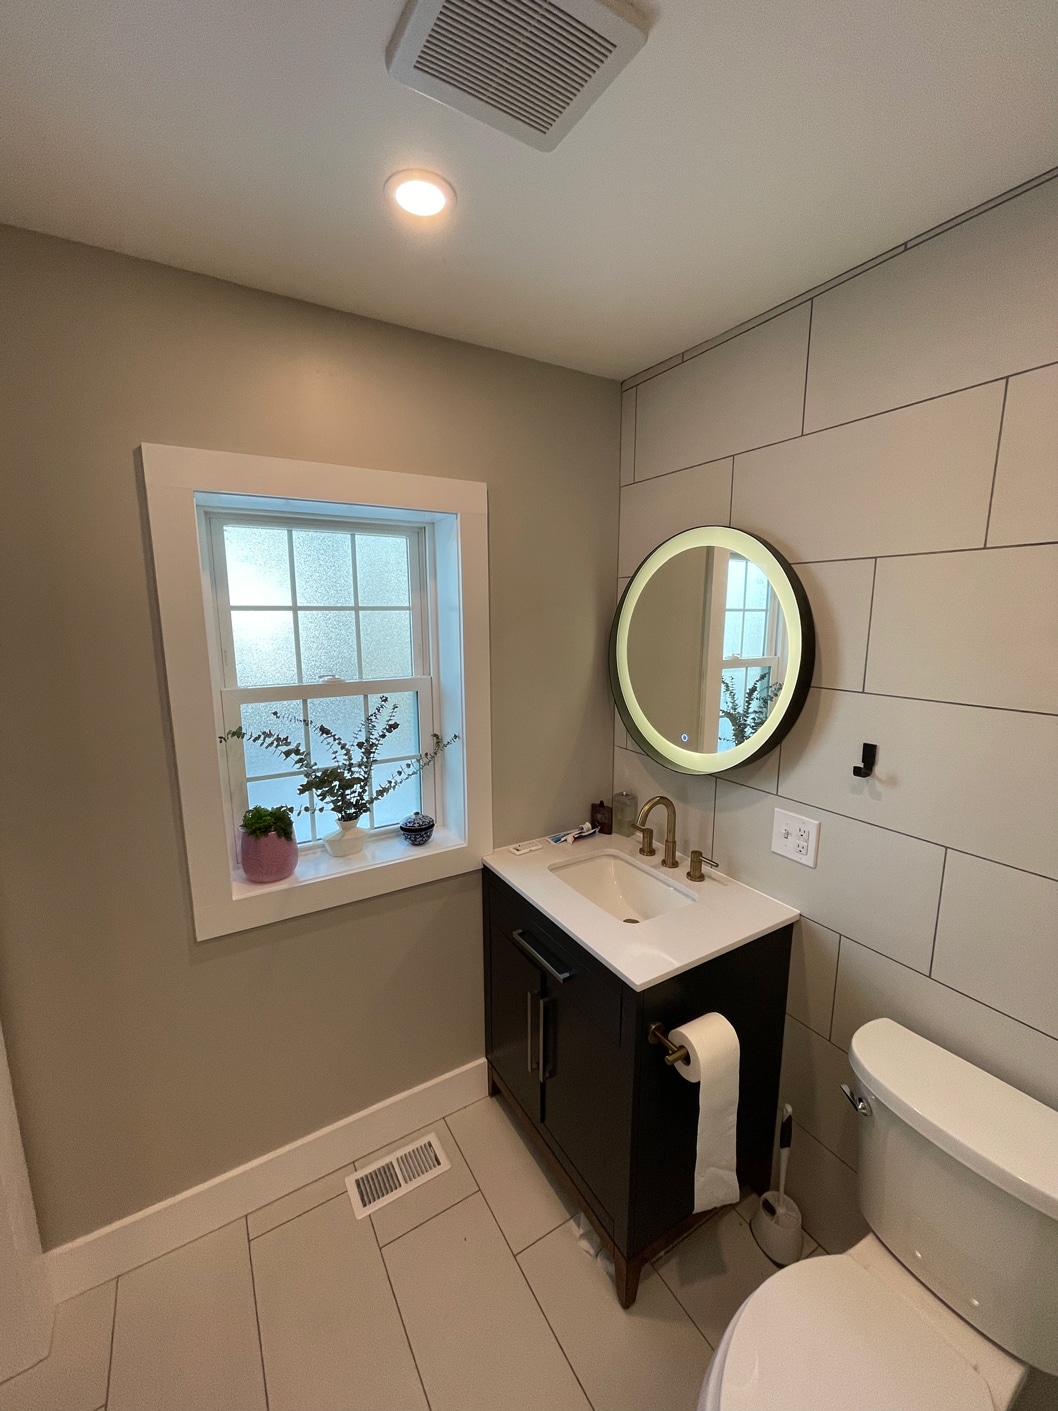 HMZ-Construction-simple-bathroom-remodel